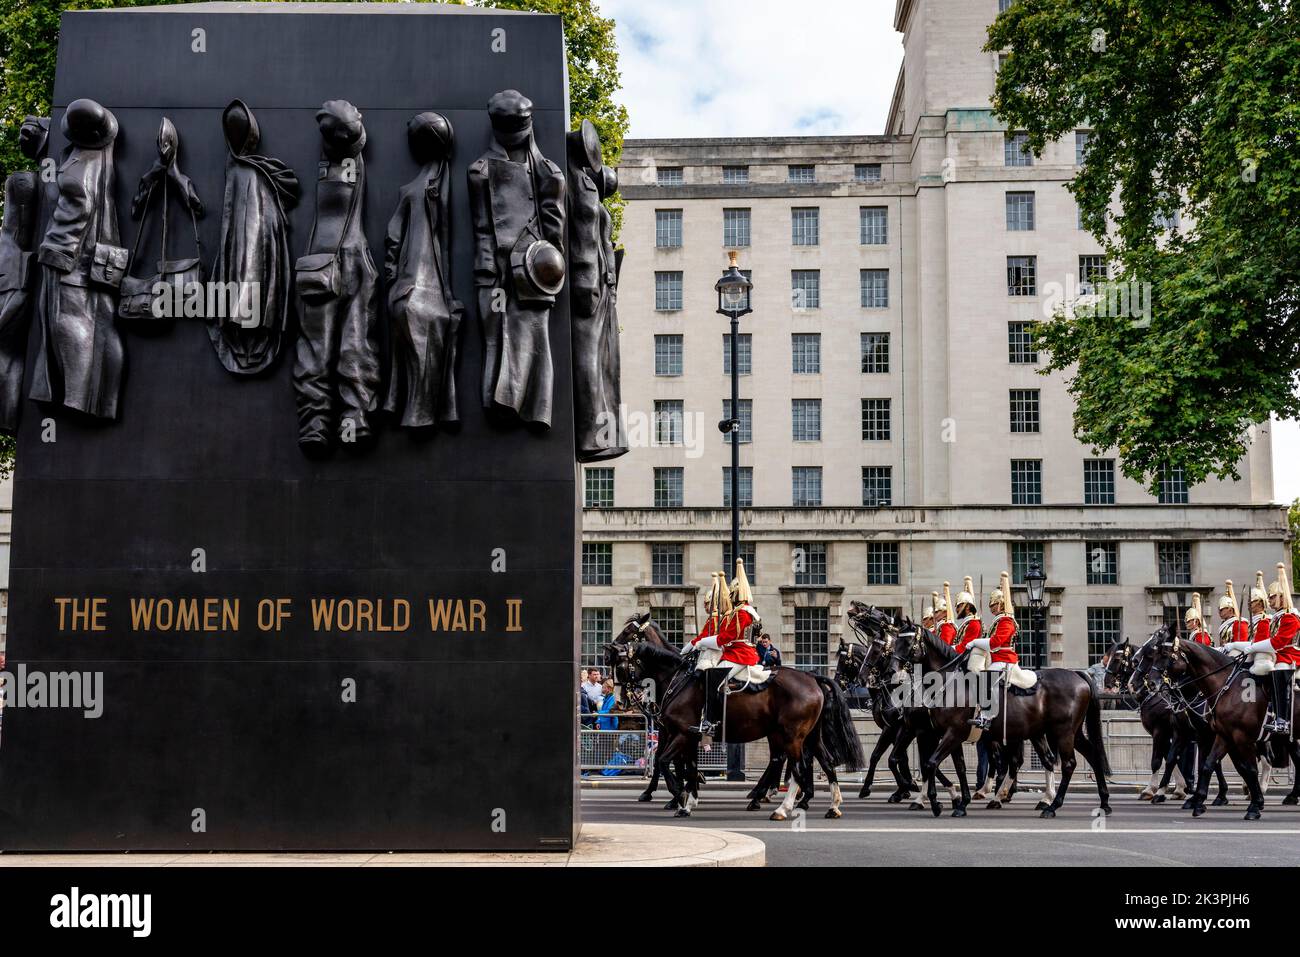 Die Life Guards passieren das Women of World war 2 Monument, während sie an der Queen Elizabeth II Funeral Procession, Whitehall, London, Großbritannien, teilnehmen. Stockfoto